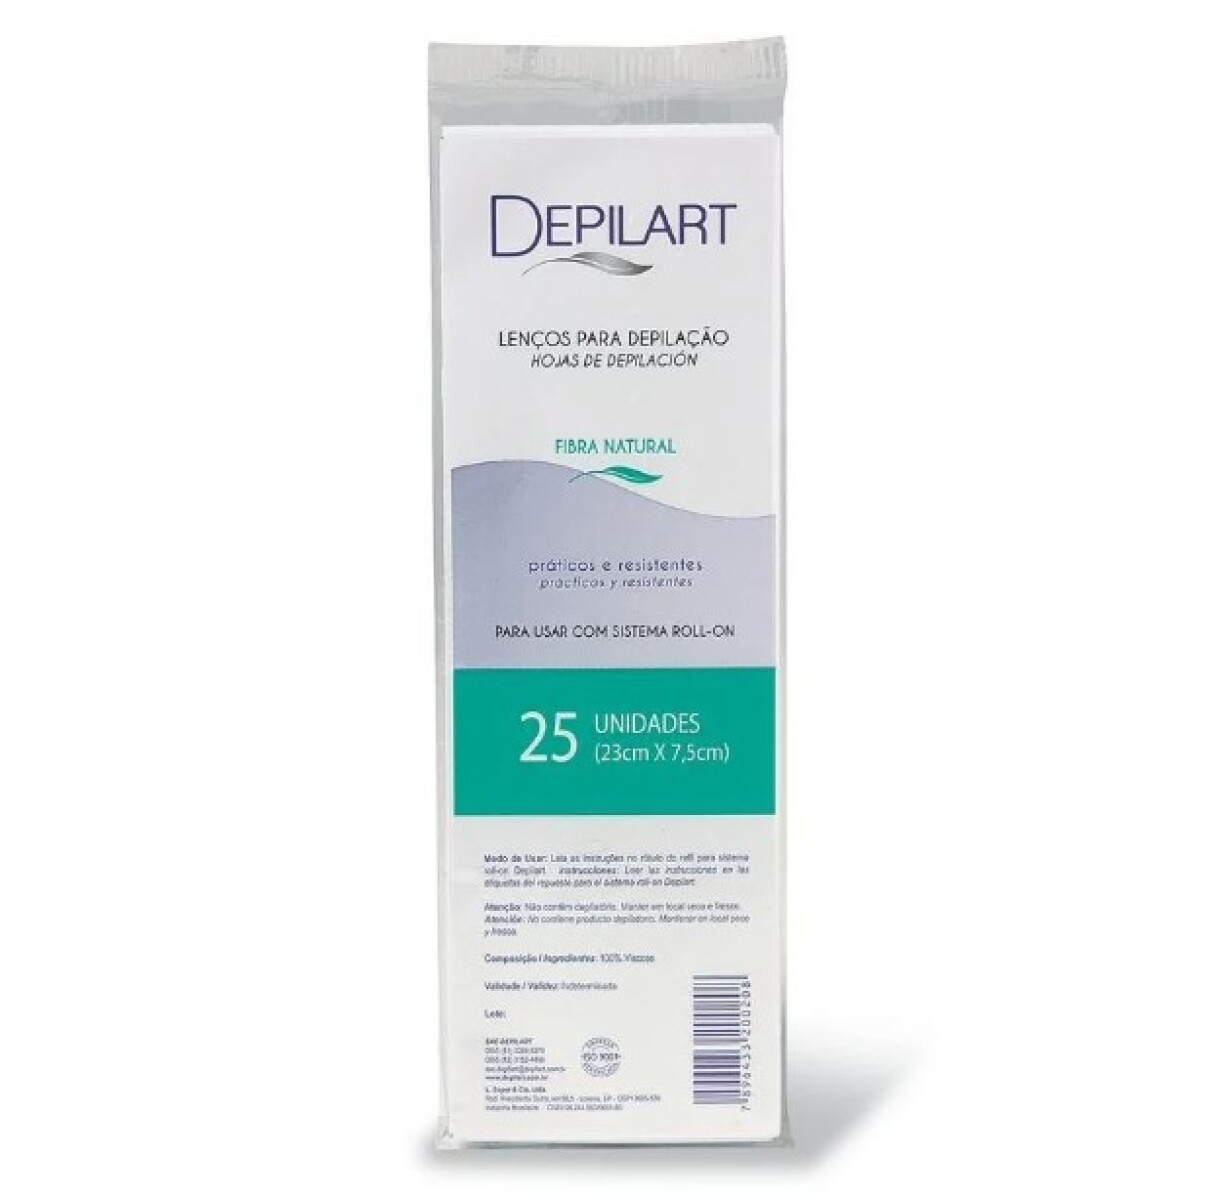 Tiras para depilación DEPILART - 25 unidades 